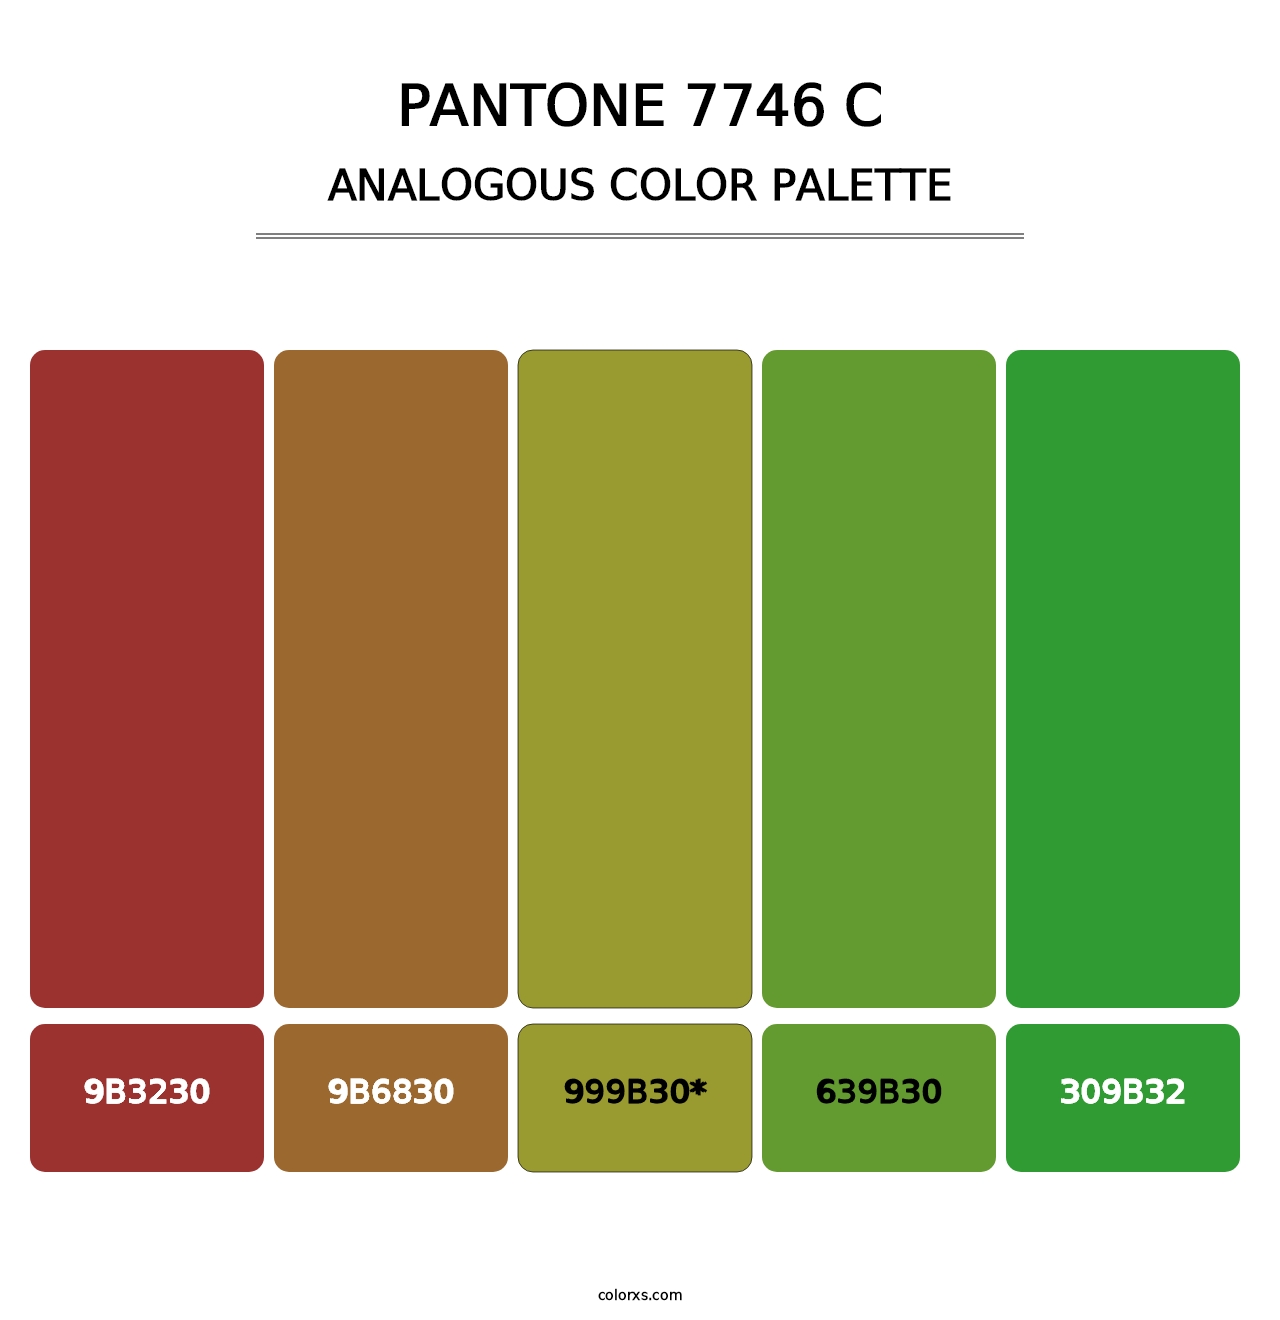 PANTONE 7746 C - Analogous Color Palette